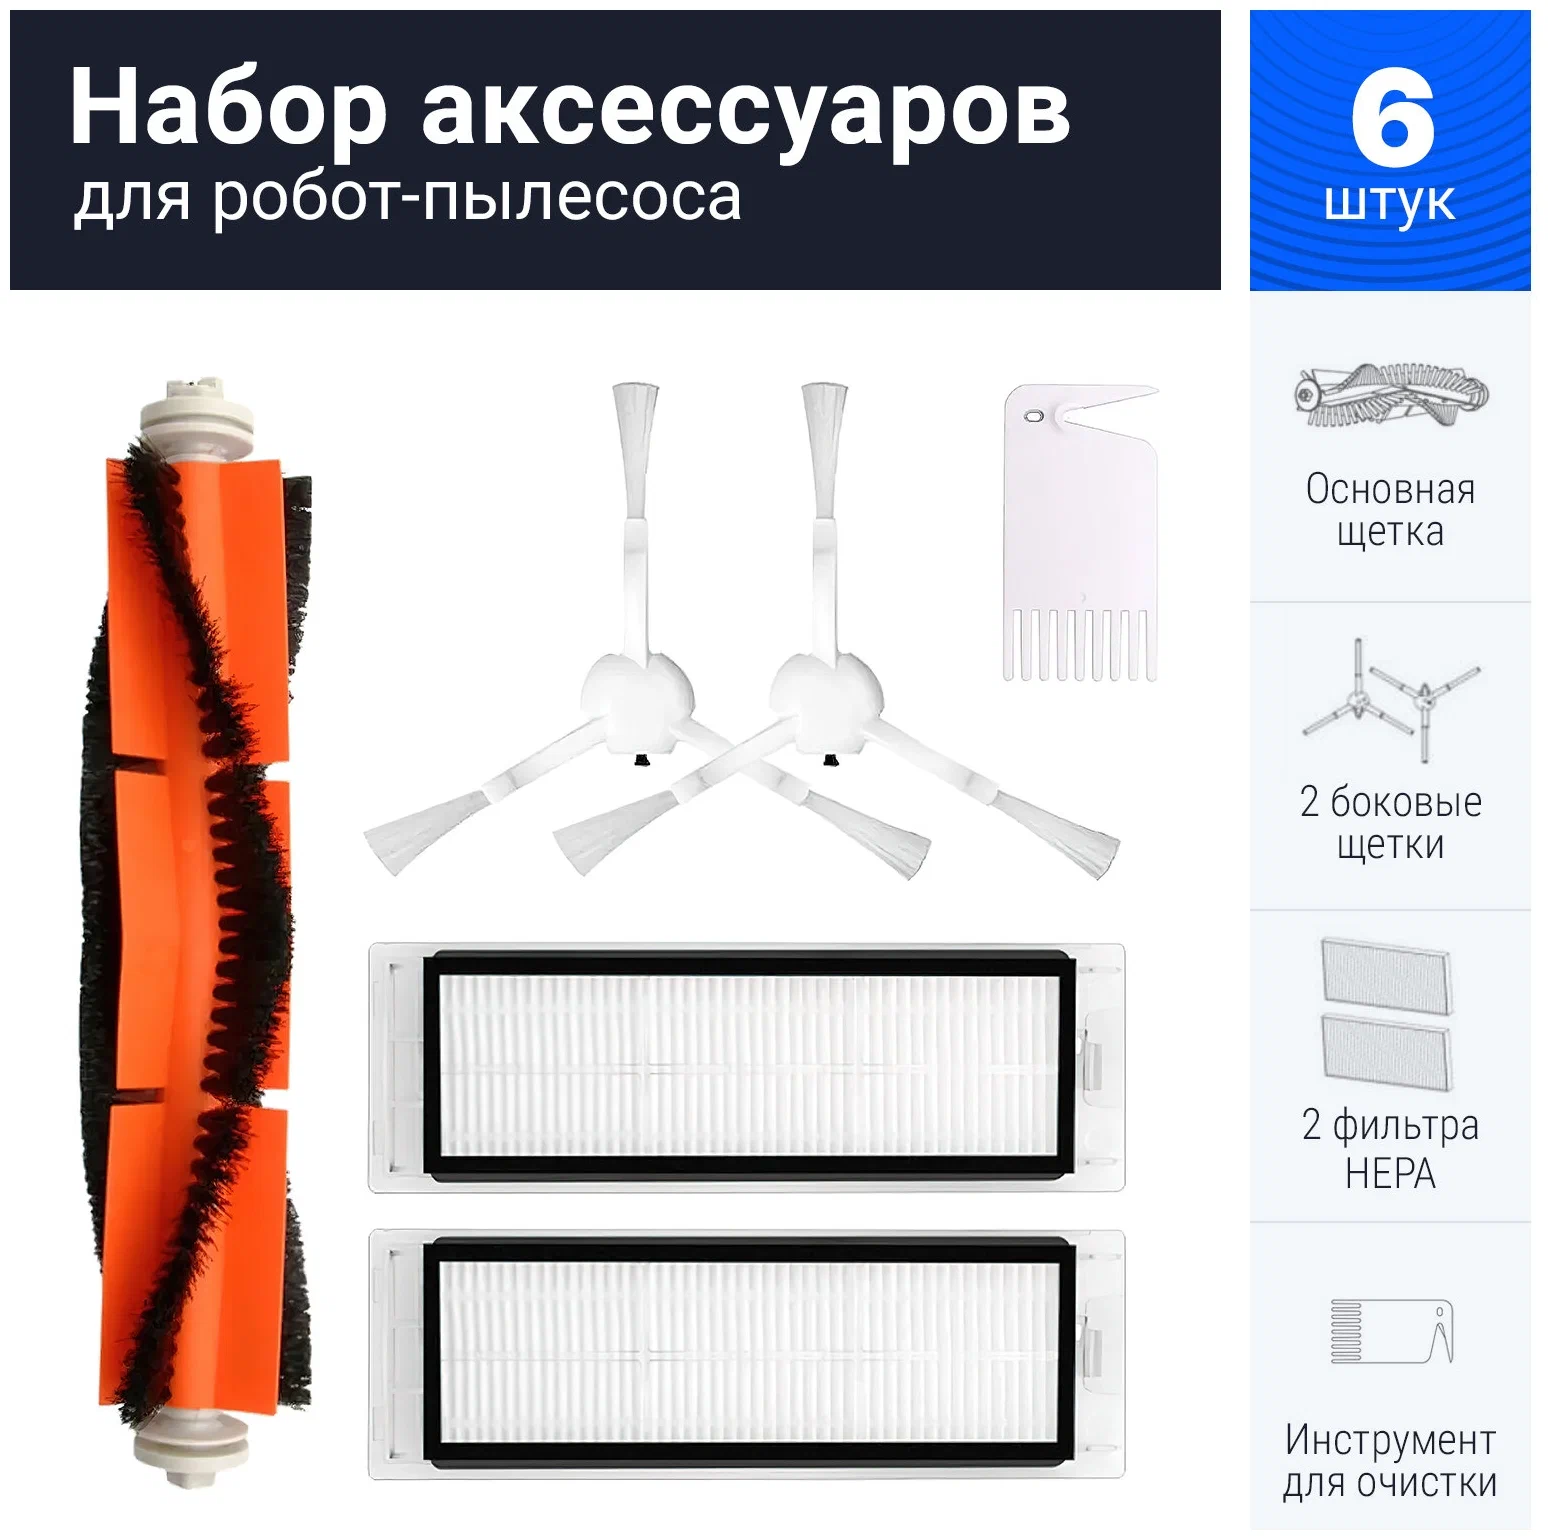 Набор аксессуаров для робот-пылесосов Xiaomi Mop/1C/1T/2C/Dream F9 в Челябинске купить по недорогим ценам с доставкой